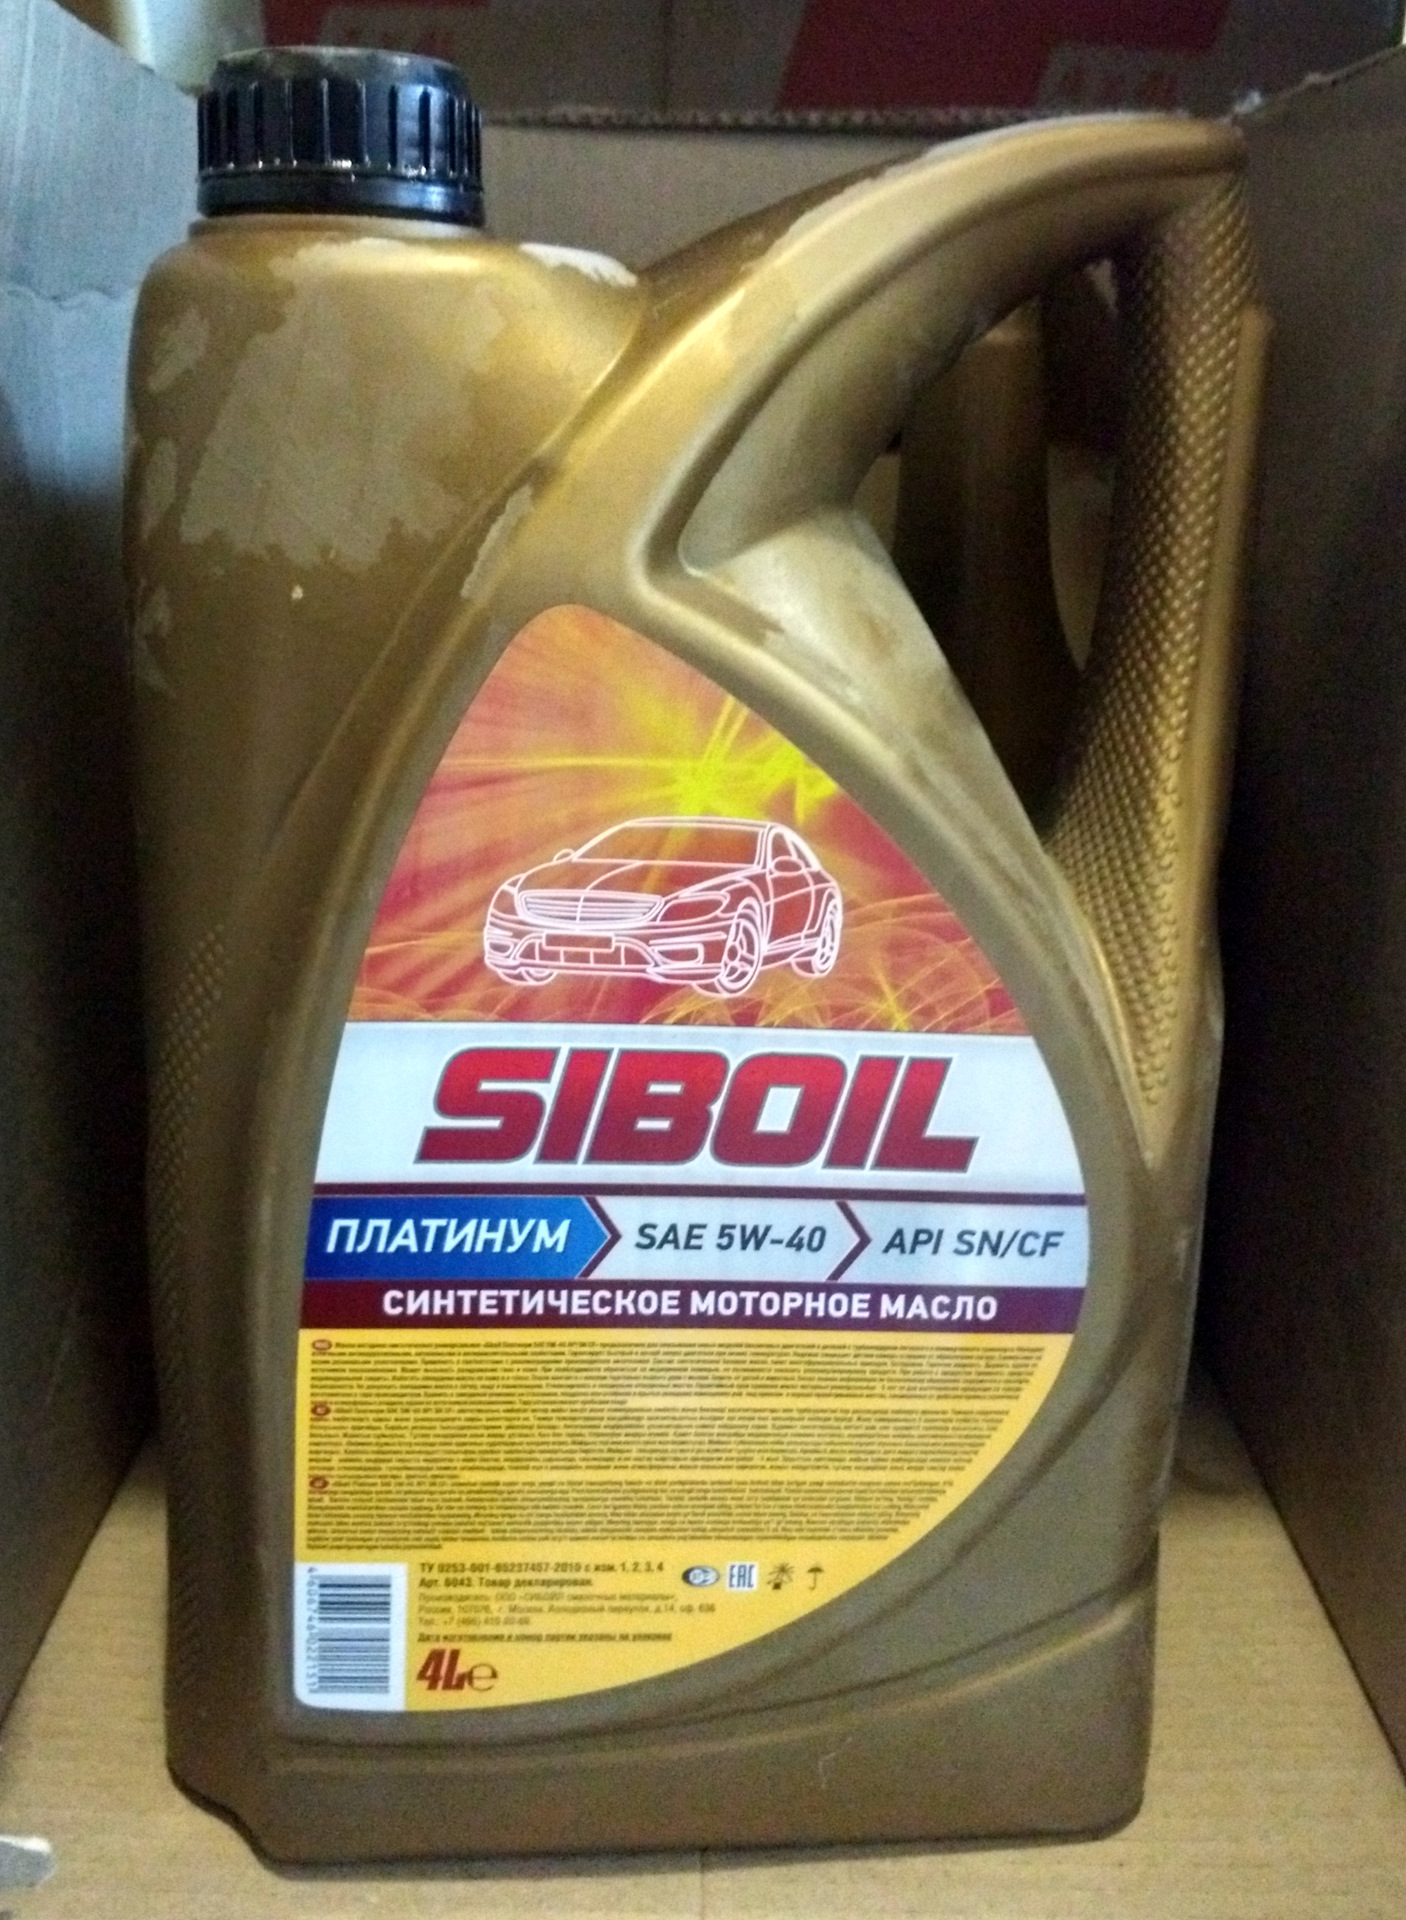 Моторное масло 5 в 10. Моторное масло Сибойл 5w 40. Масло Siboil 5w-40 светофор. Масло моторное Sintec ( 5w40 .SAE Synt. 4 Л.). Масло Сибойл супер полусинтетика.